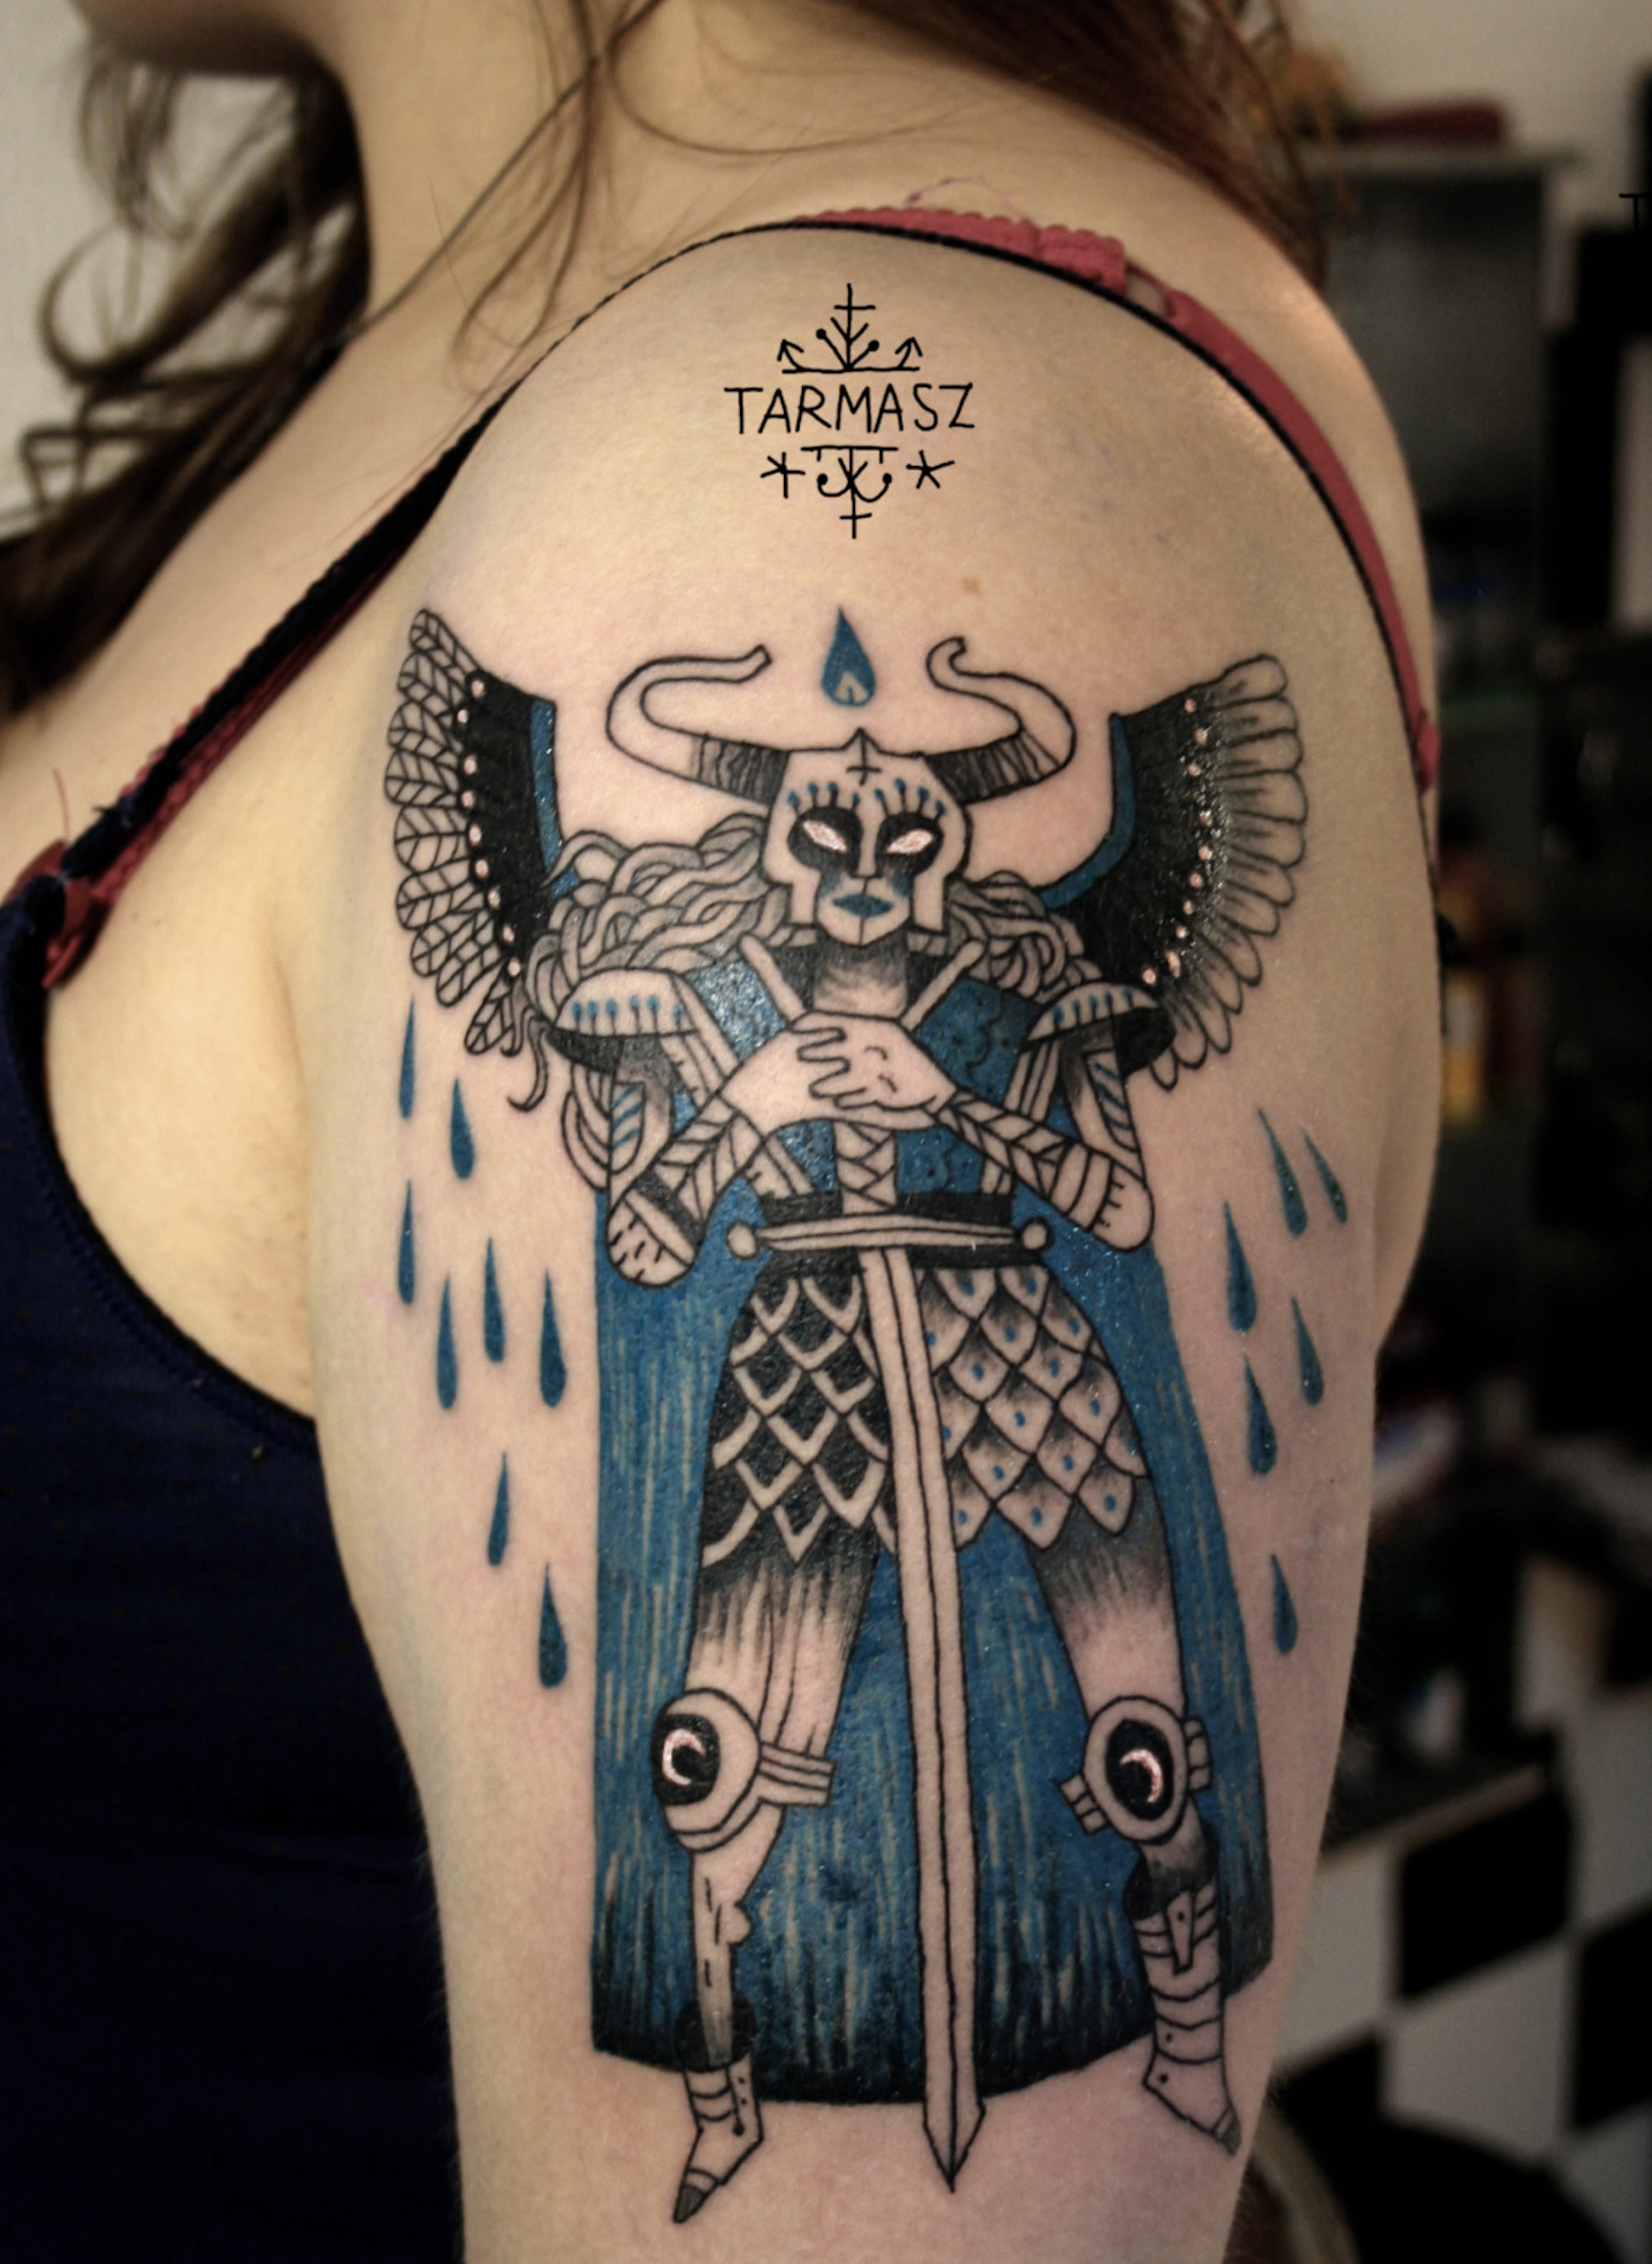 Arm tattoo by Tarmasz